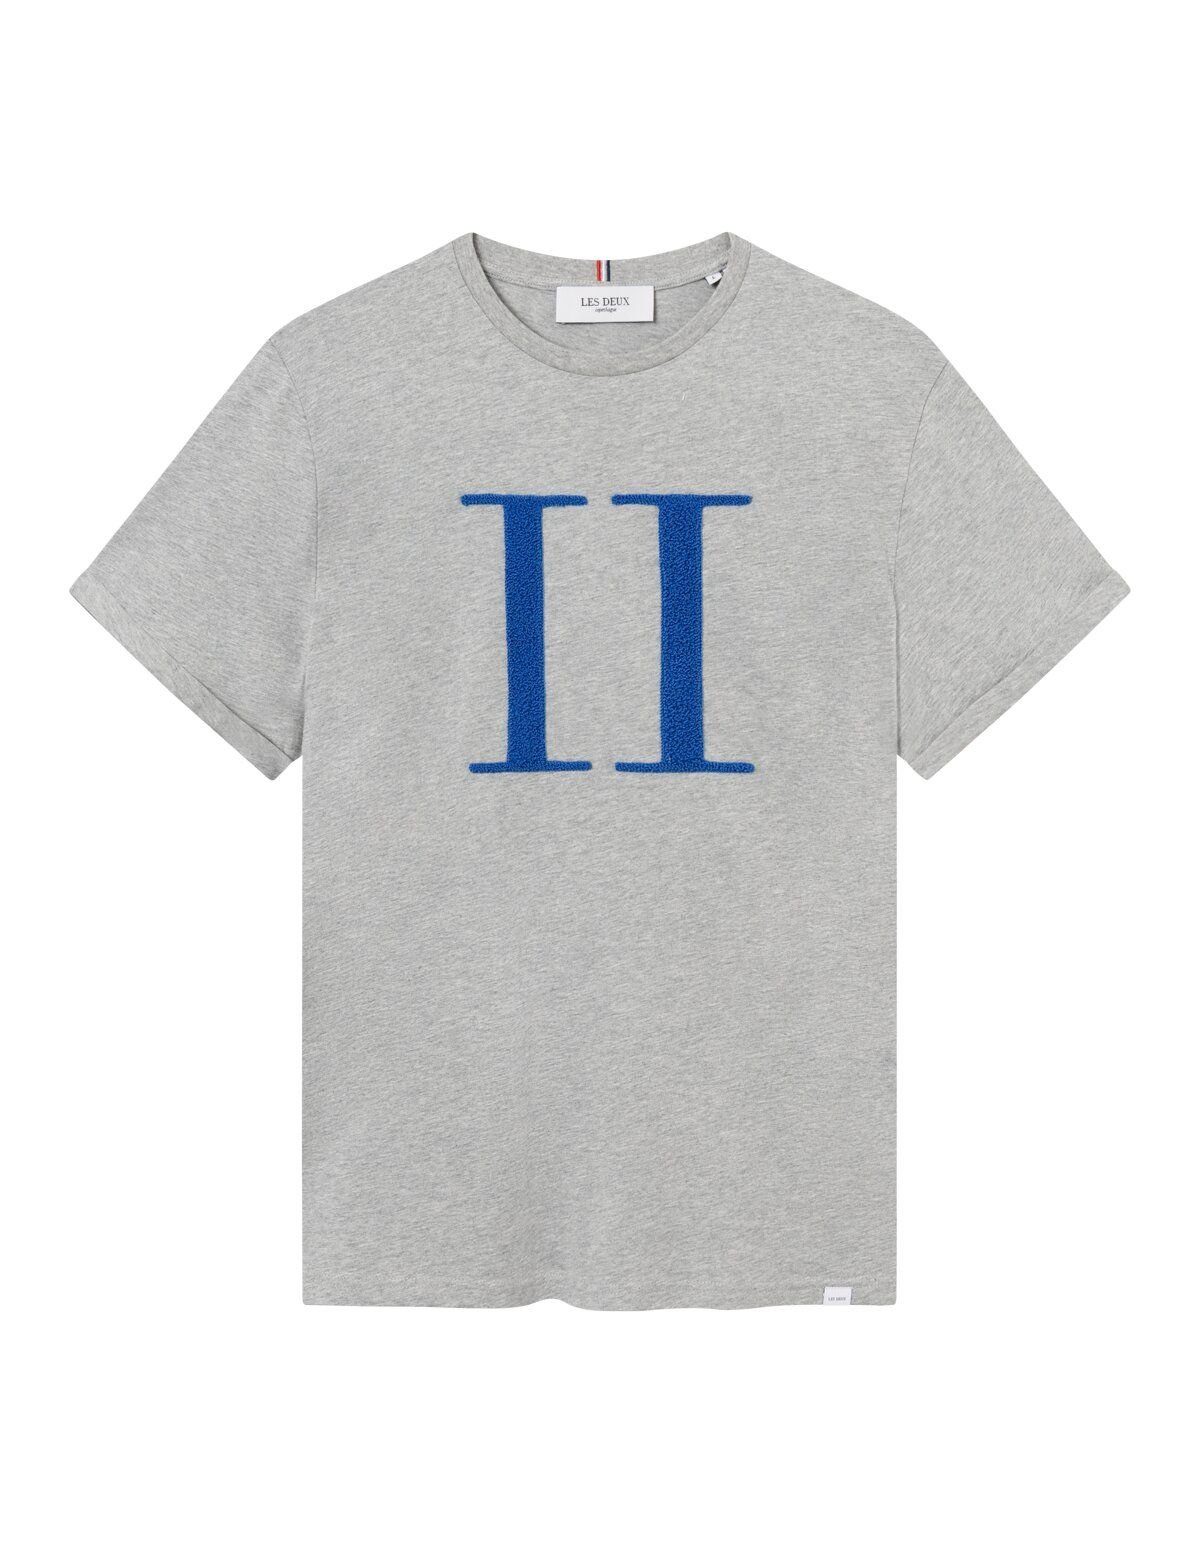 Les Deux T-Shirt 310471-Light Grey Melange-Palace Blue - Main